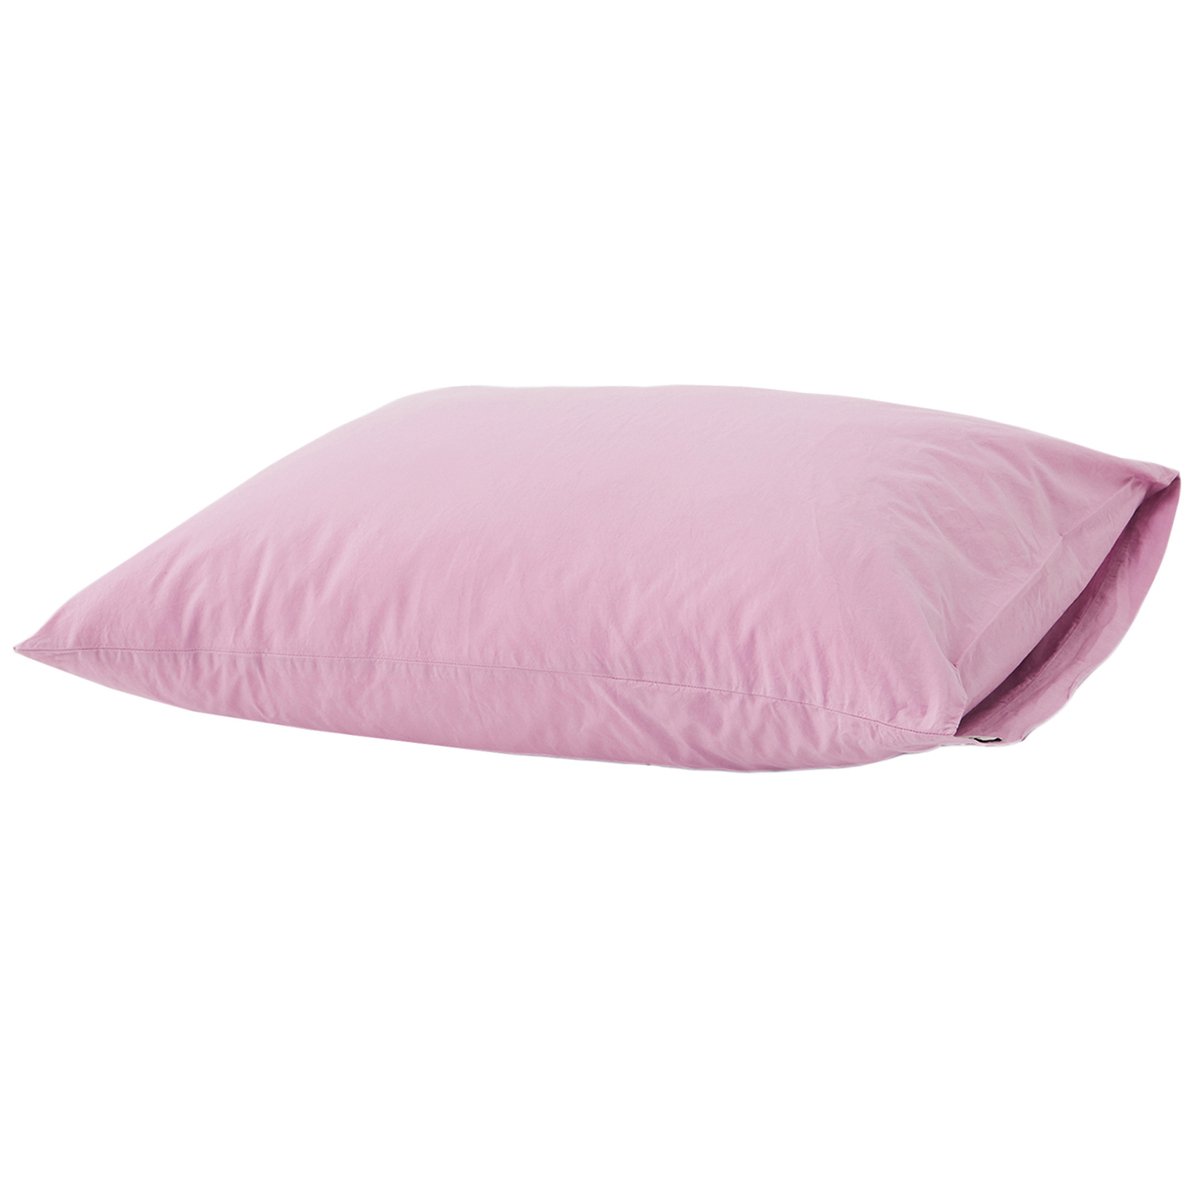 1200px x 1200px - Tekla Pillow sham, 50 x 60 cm, mallow pink | Finnish Design Shop